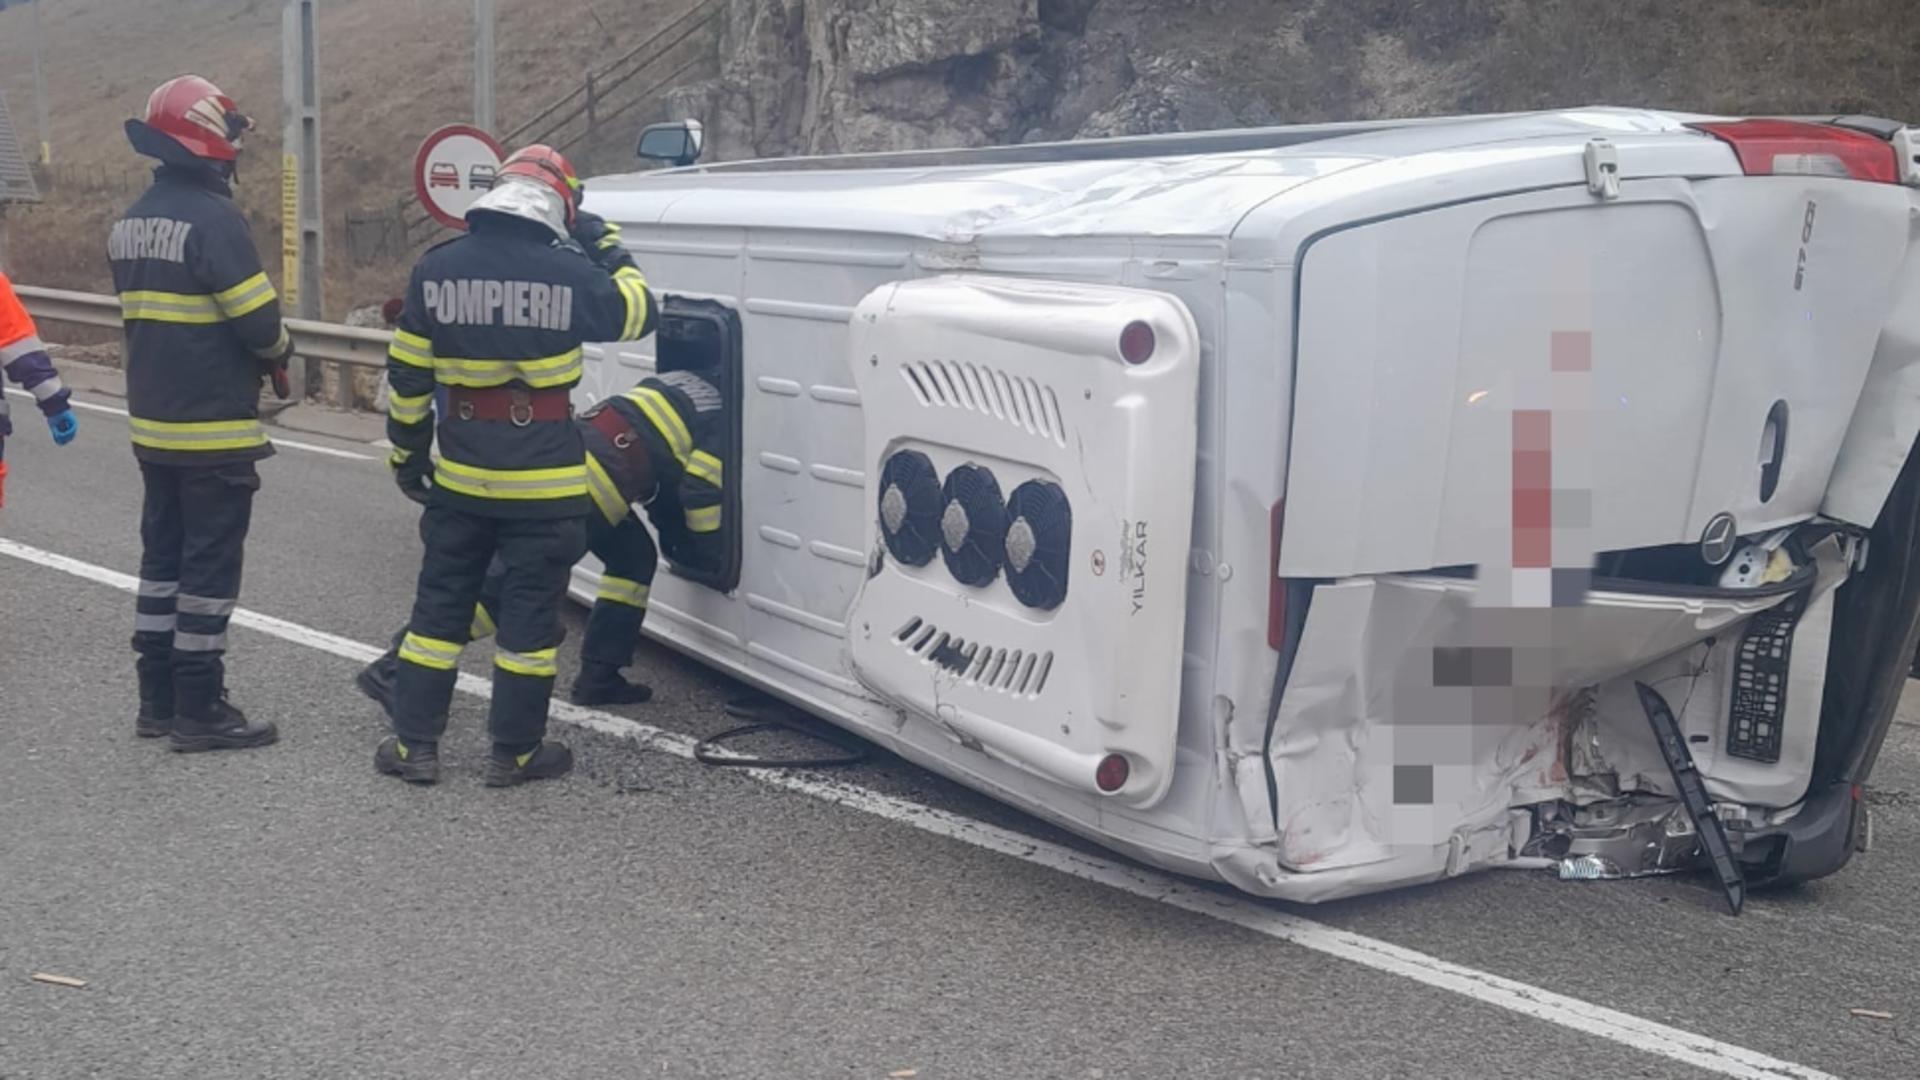 Impact violent, în județul Suceava, între un microbuz și un camion – 12 persoane au fost implicate. Planul roșu a fost activat. FOTO